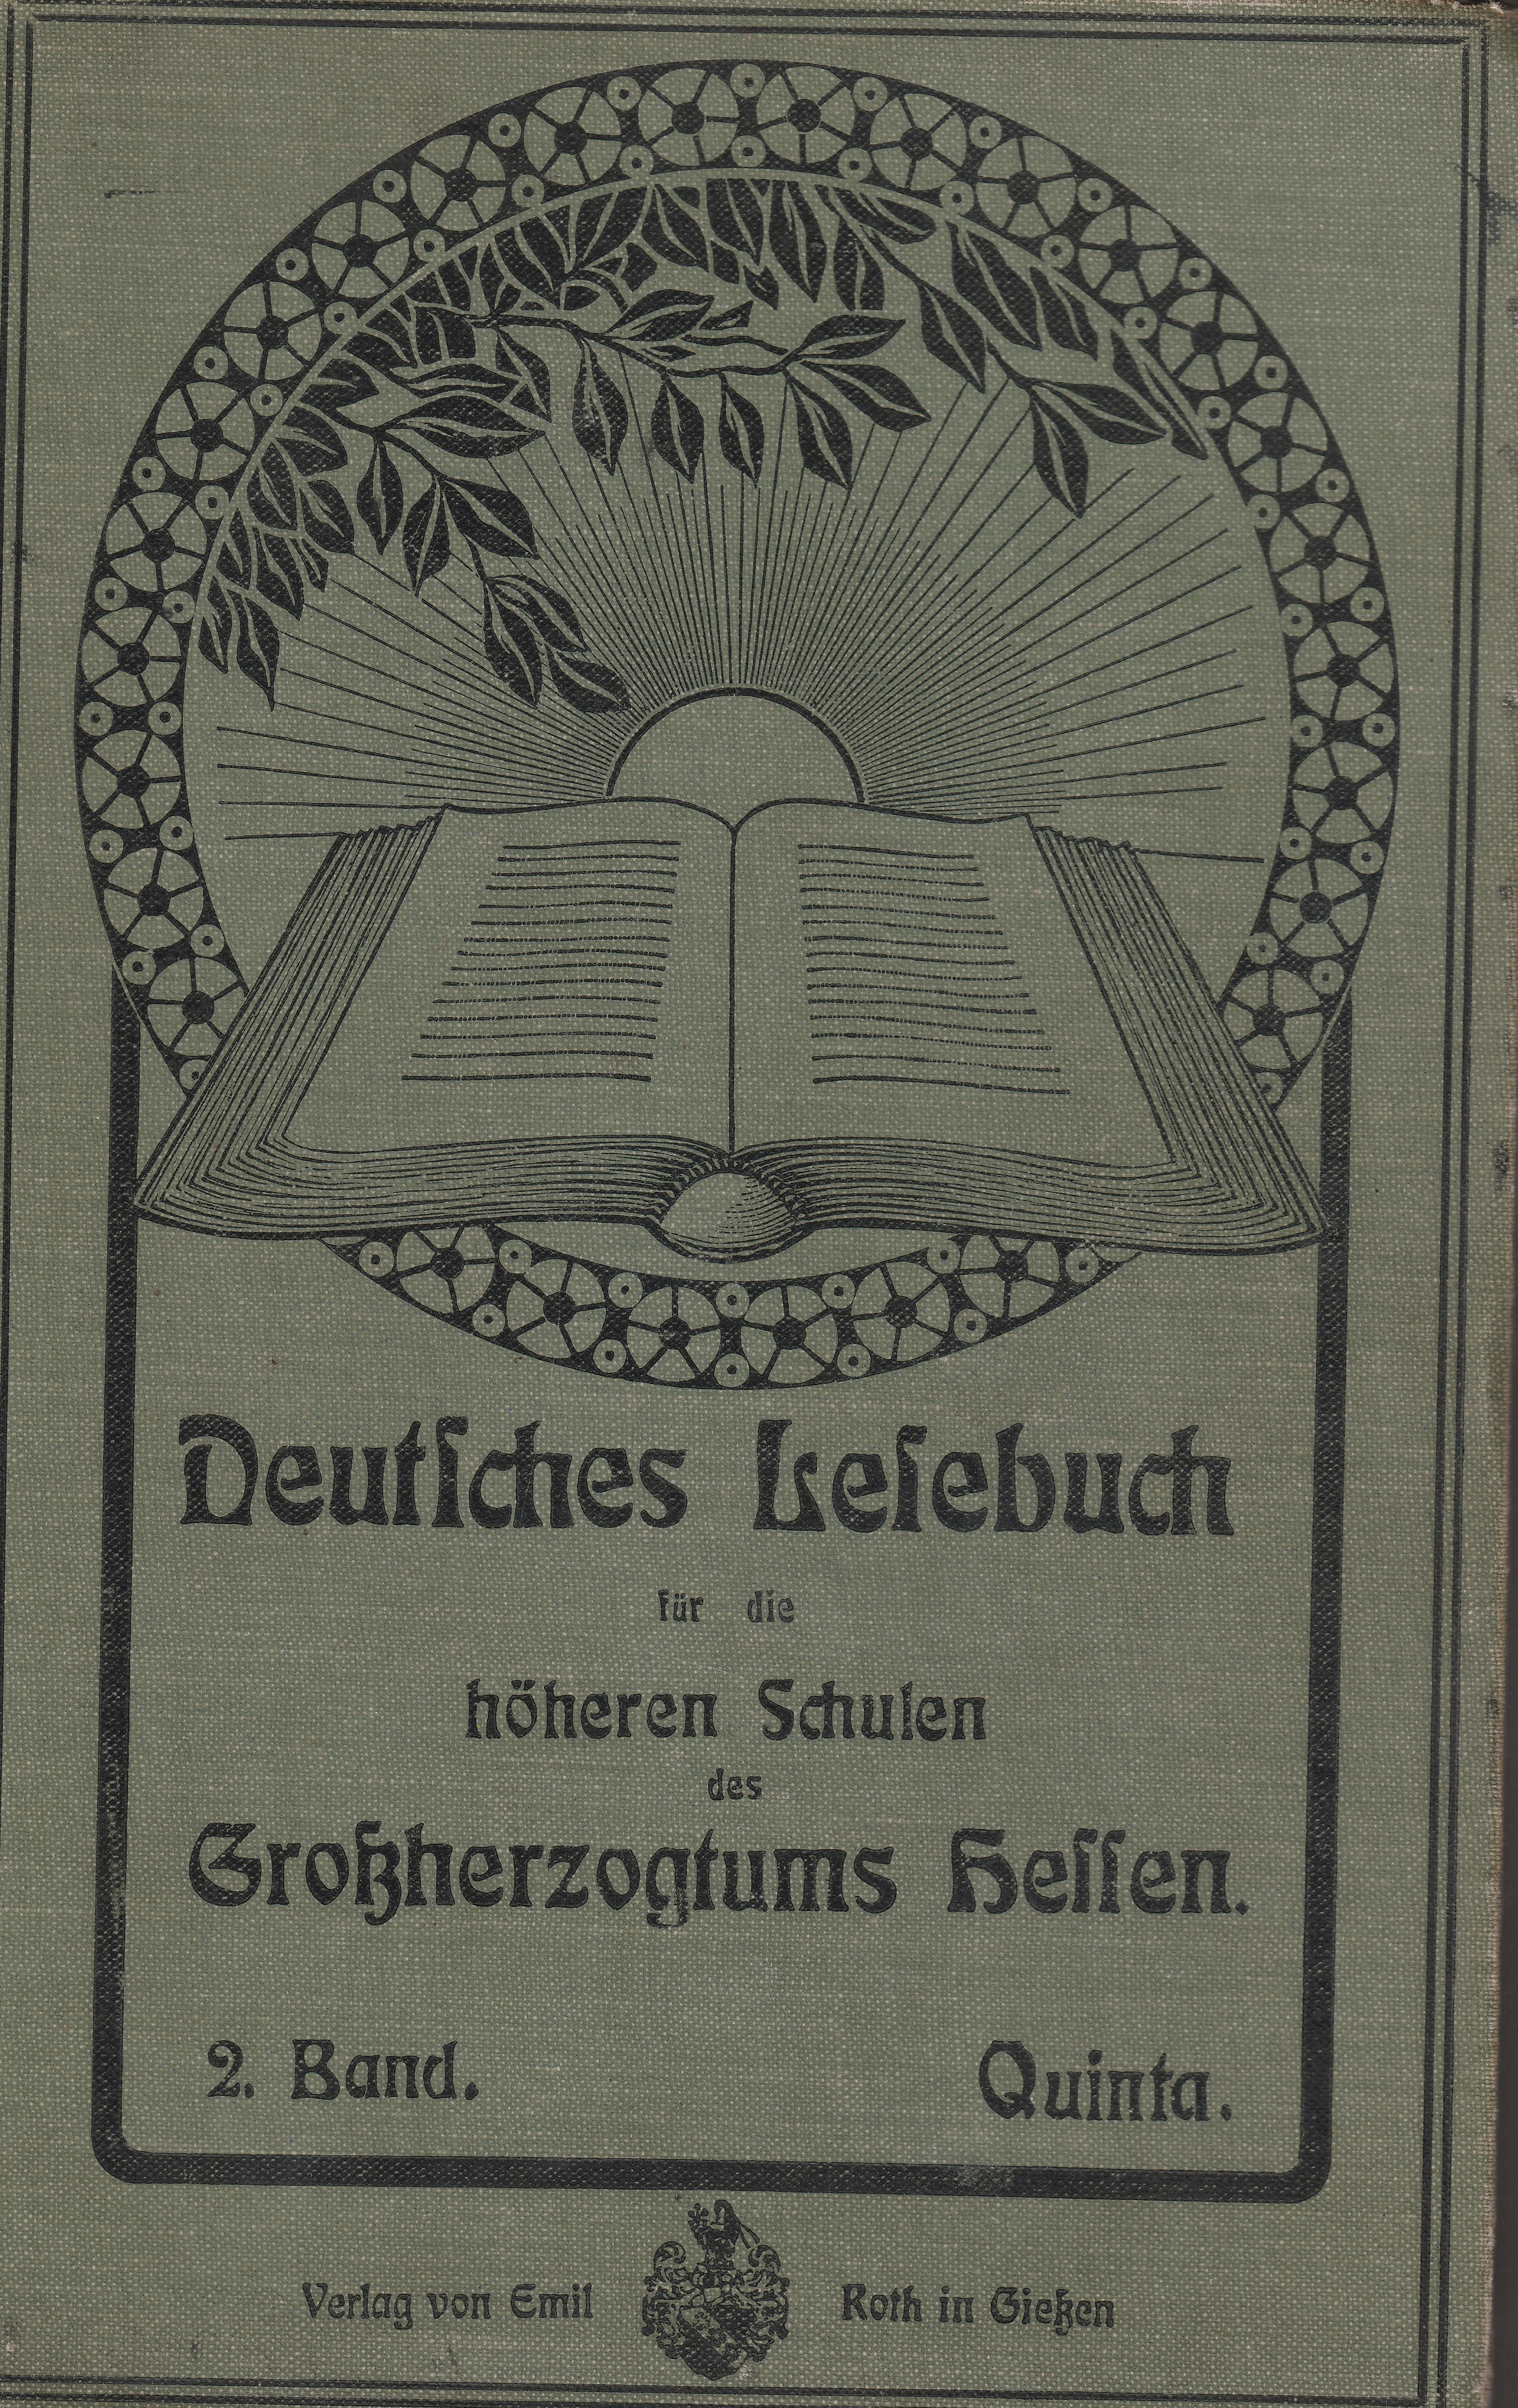 Deutsches Lesebuch für die höheren Schulen des Großherzogtums Hessen etwa 1910 (Museum Guntersblum CC BY-NC-SA)